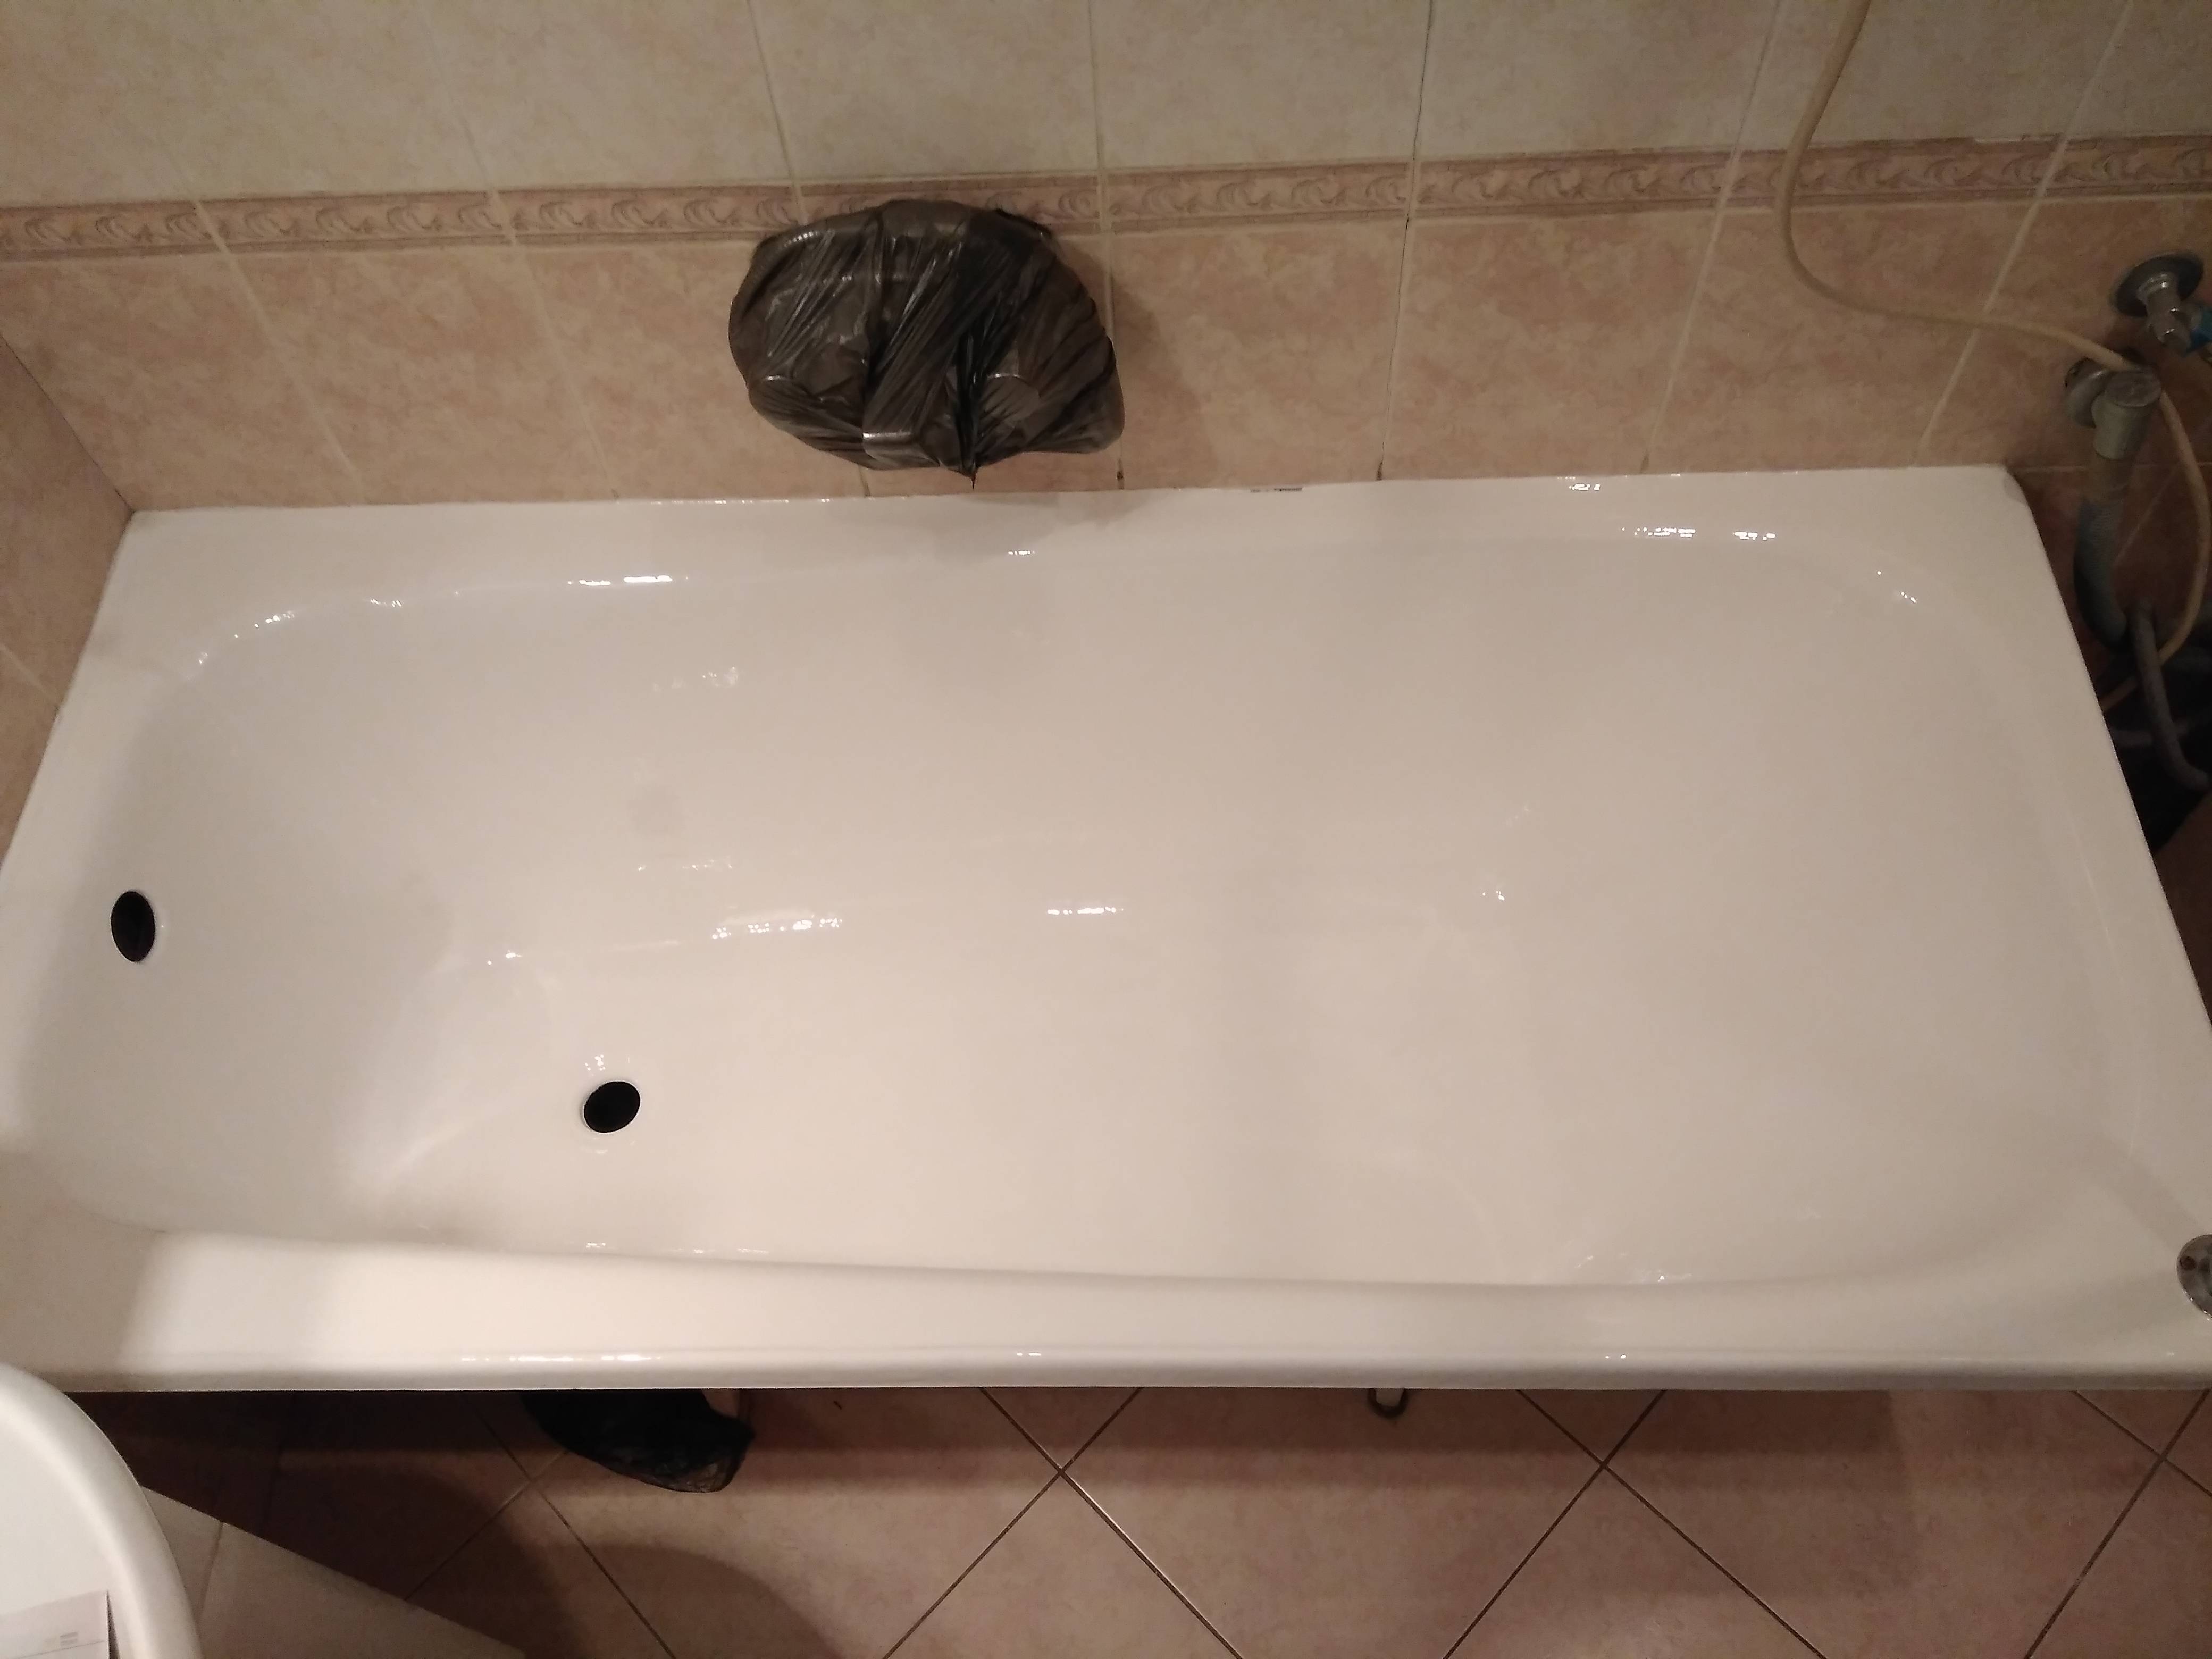 Реставрация ванны своими руками: подготовка и пошаговая реставрация ванной